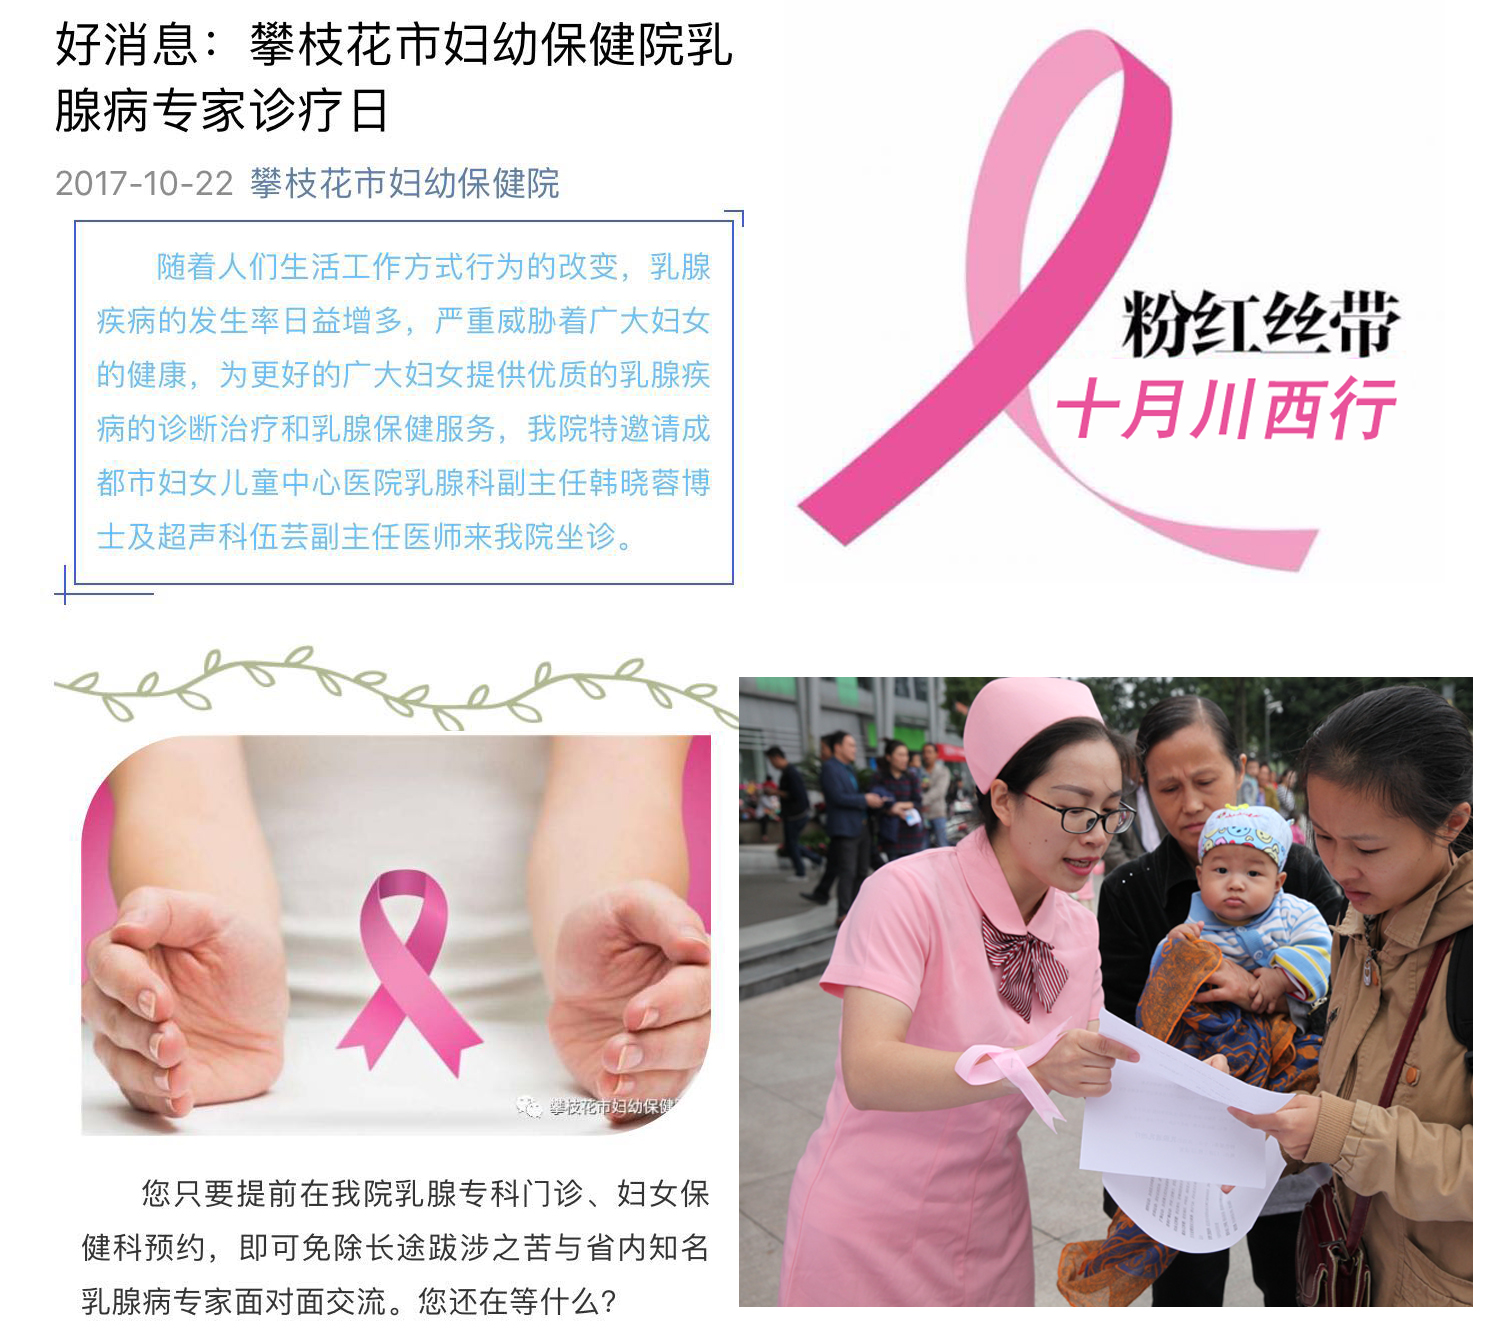 粉红丝带川西行，乳腺科垮区域共享优质医疗资源